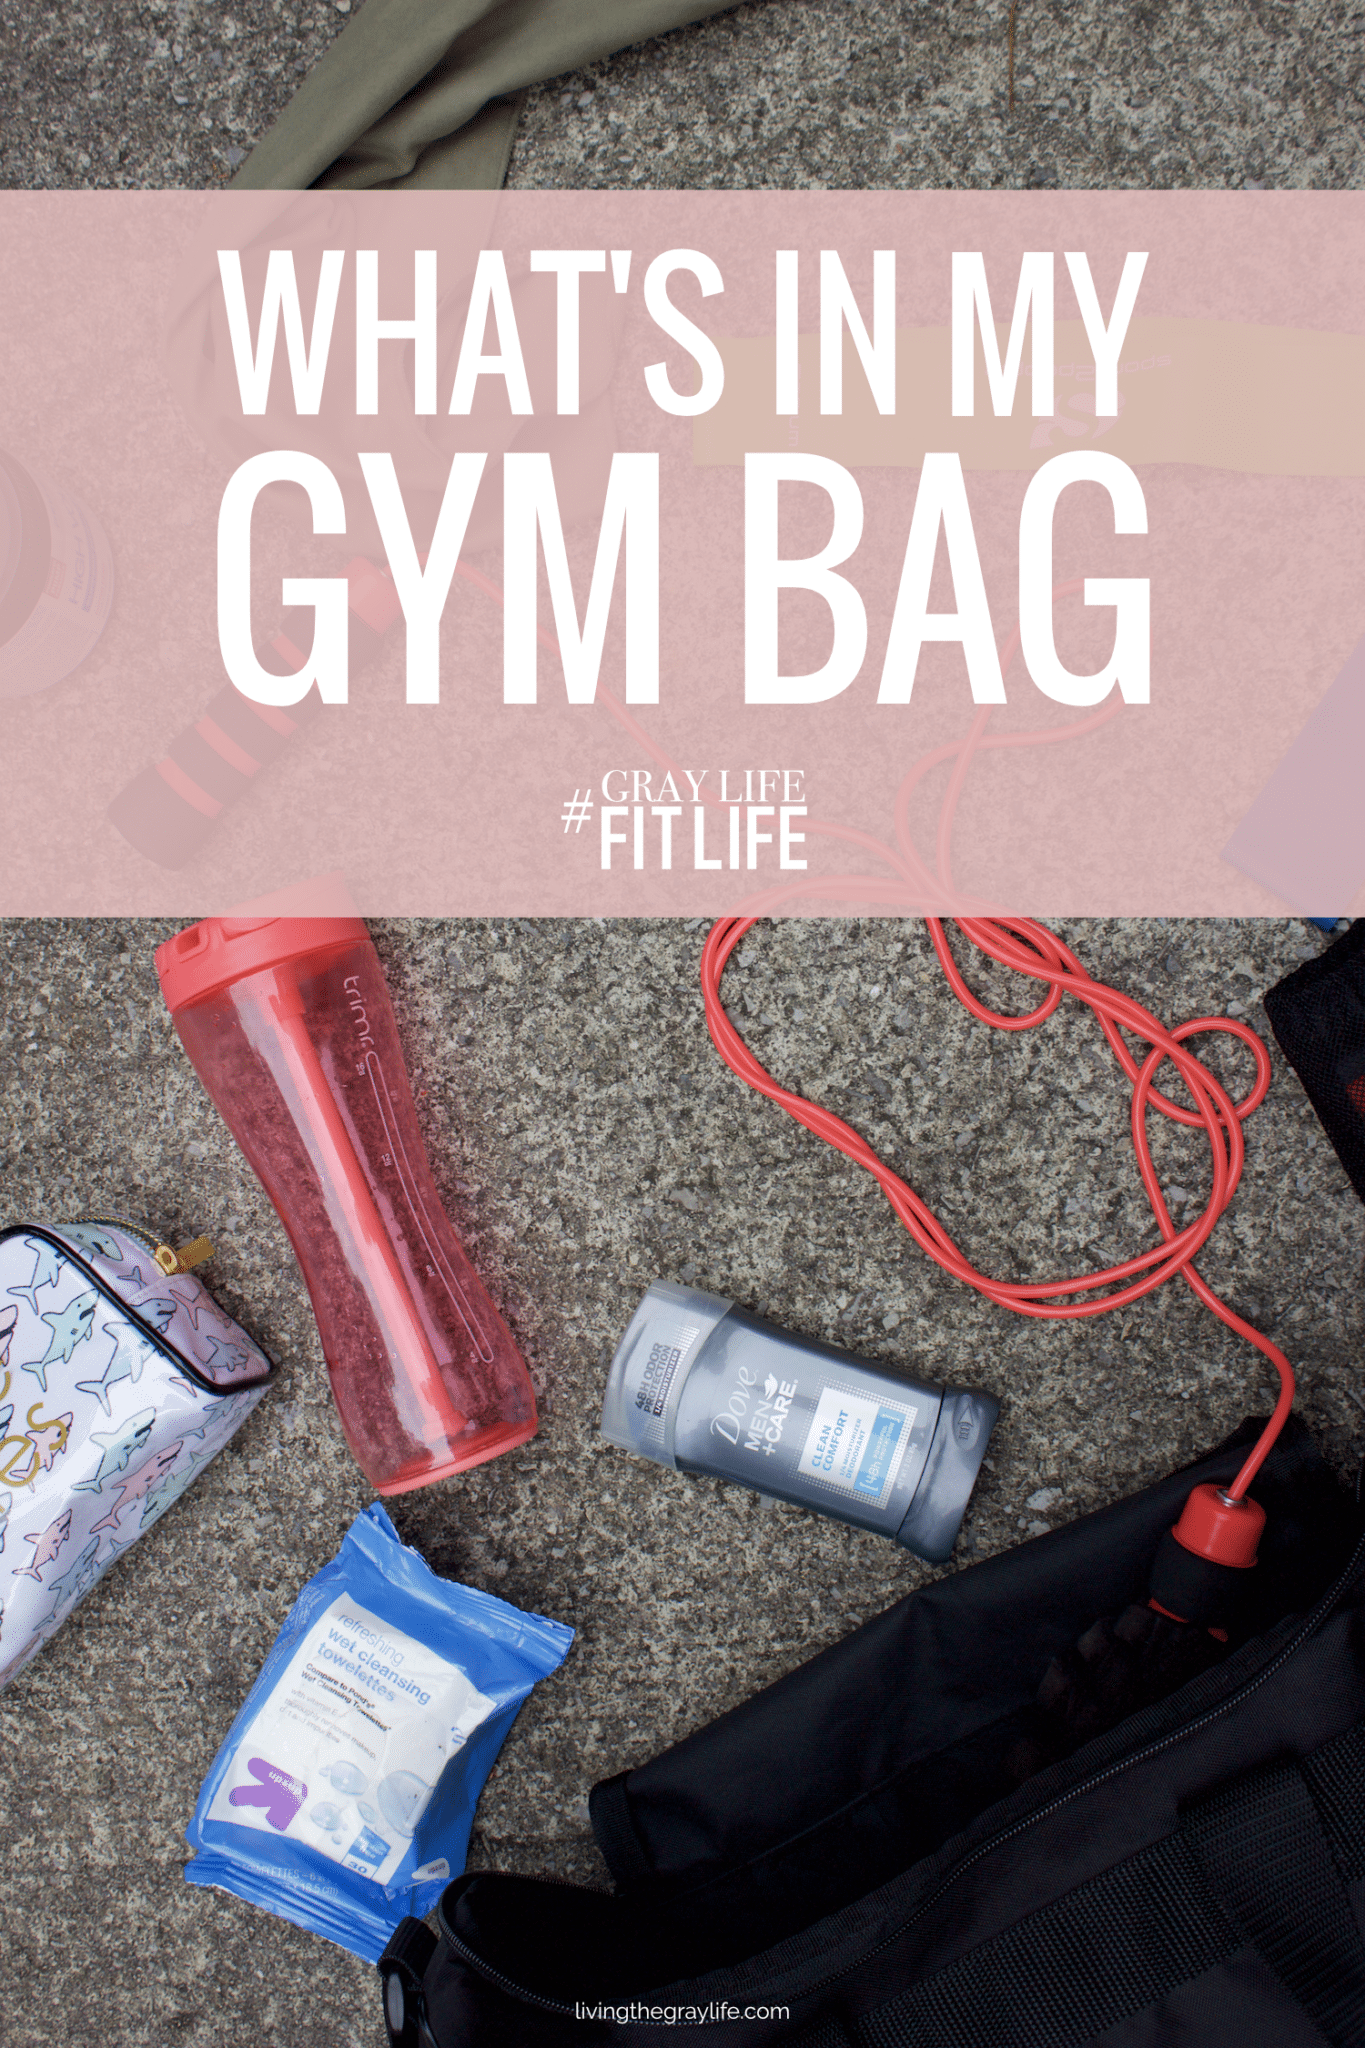 Gym Bag Essentials